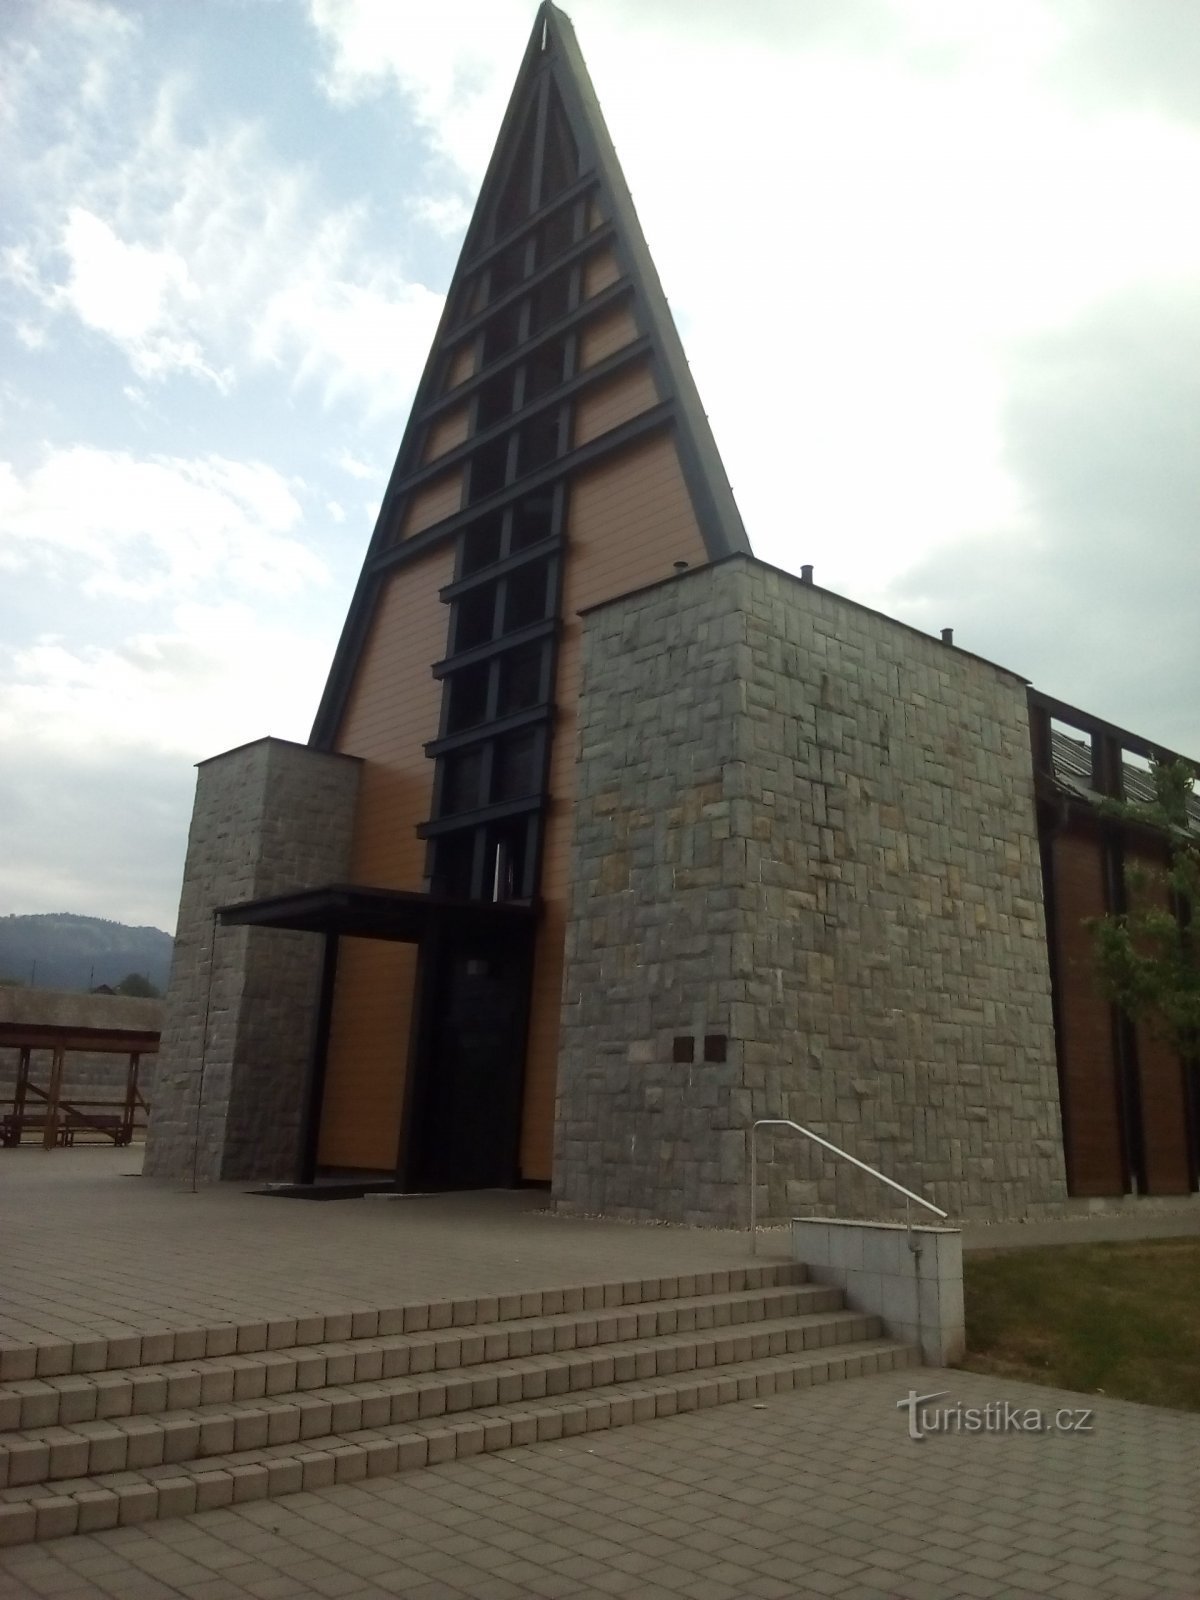 Crkva SCEAV u Píseku